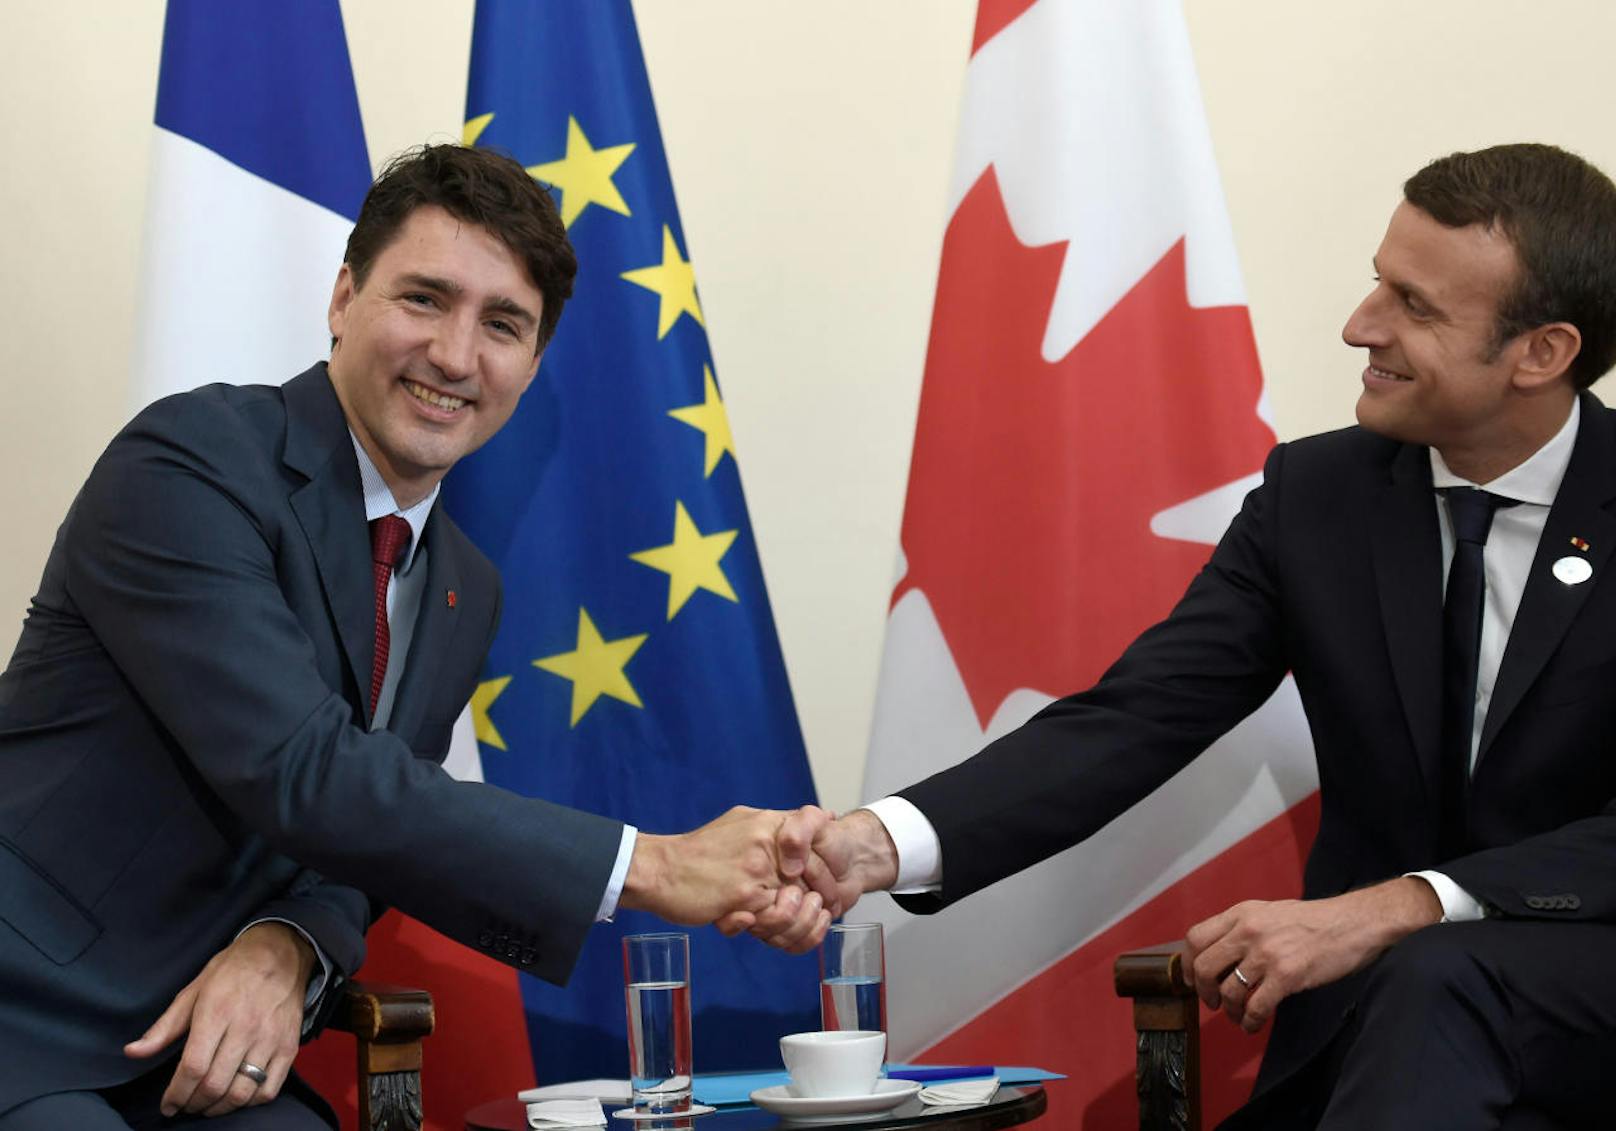 Hat der kanadische Premier Justin Trudeau an seinen Augenbrauen ebenfalls "gearbeitet". Internationale Medien haben dies in den den letzten Monaten spekuliert.